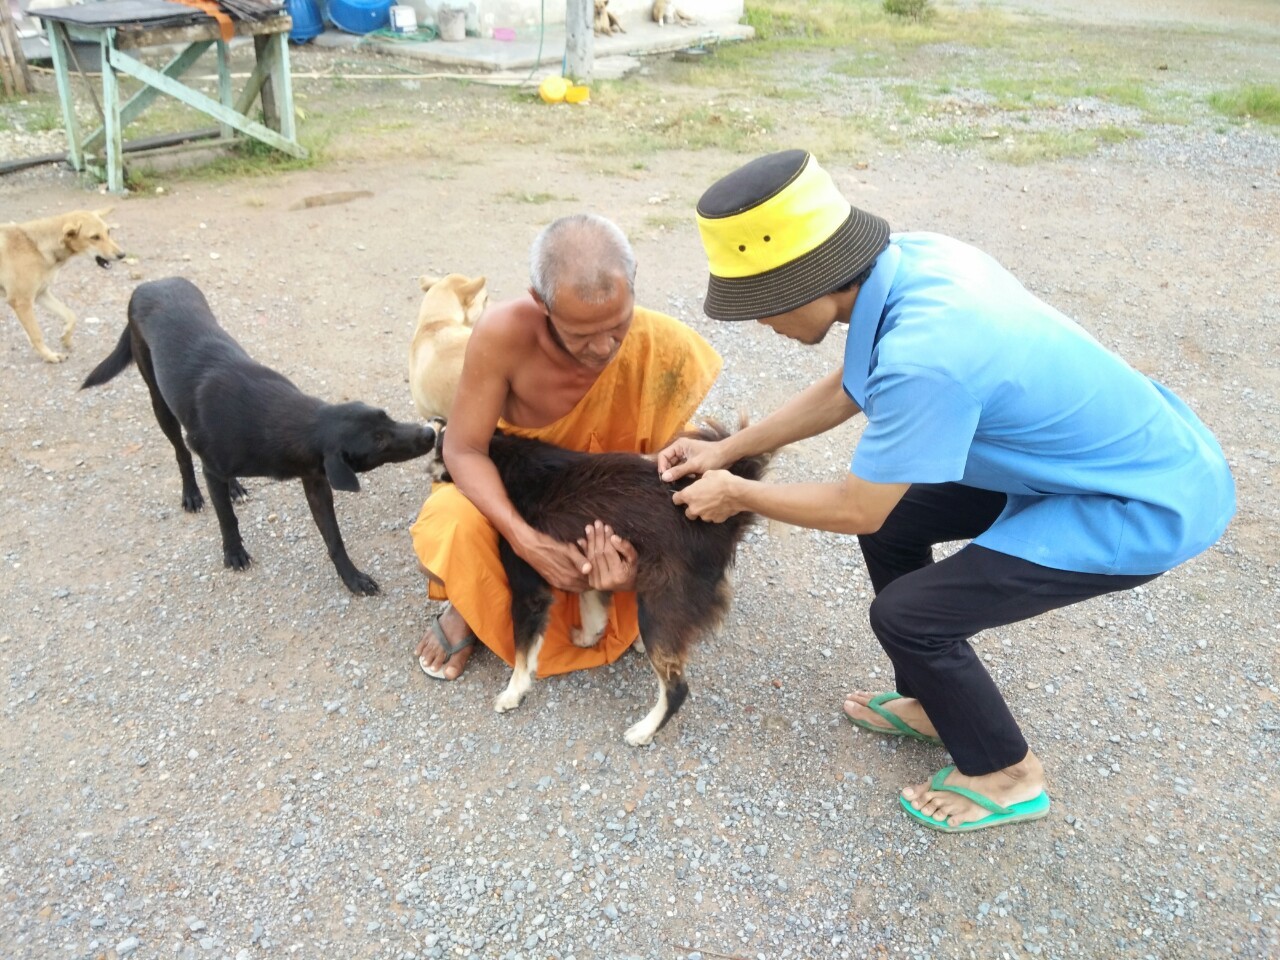 โครงการสัตว์โรค คนปลอดภัย จากโรคพิสุนัขบ้า 25 กันยายน 2563